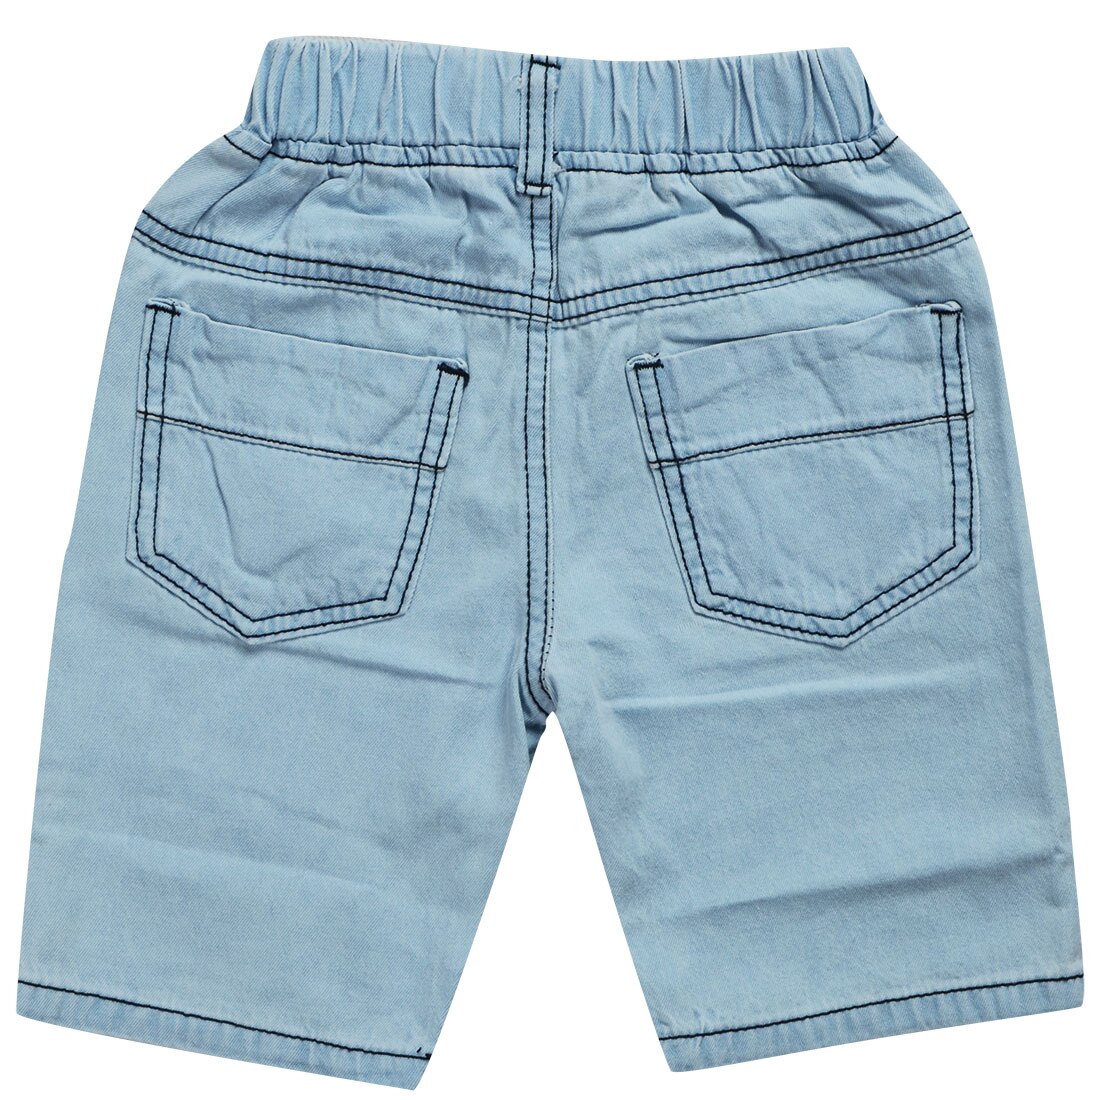 Børnetøj vasket denim drengens denim shorts børn hul casualshorts sommer shorts